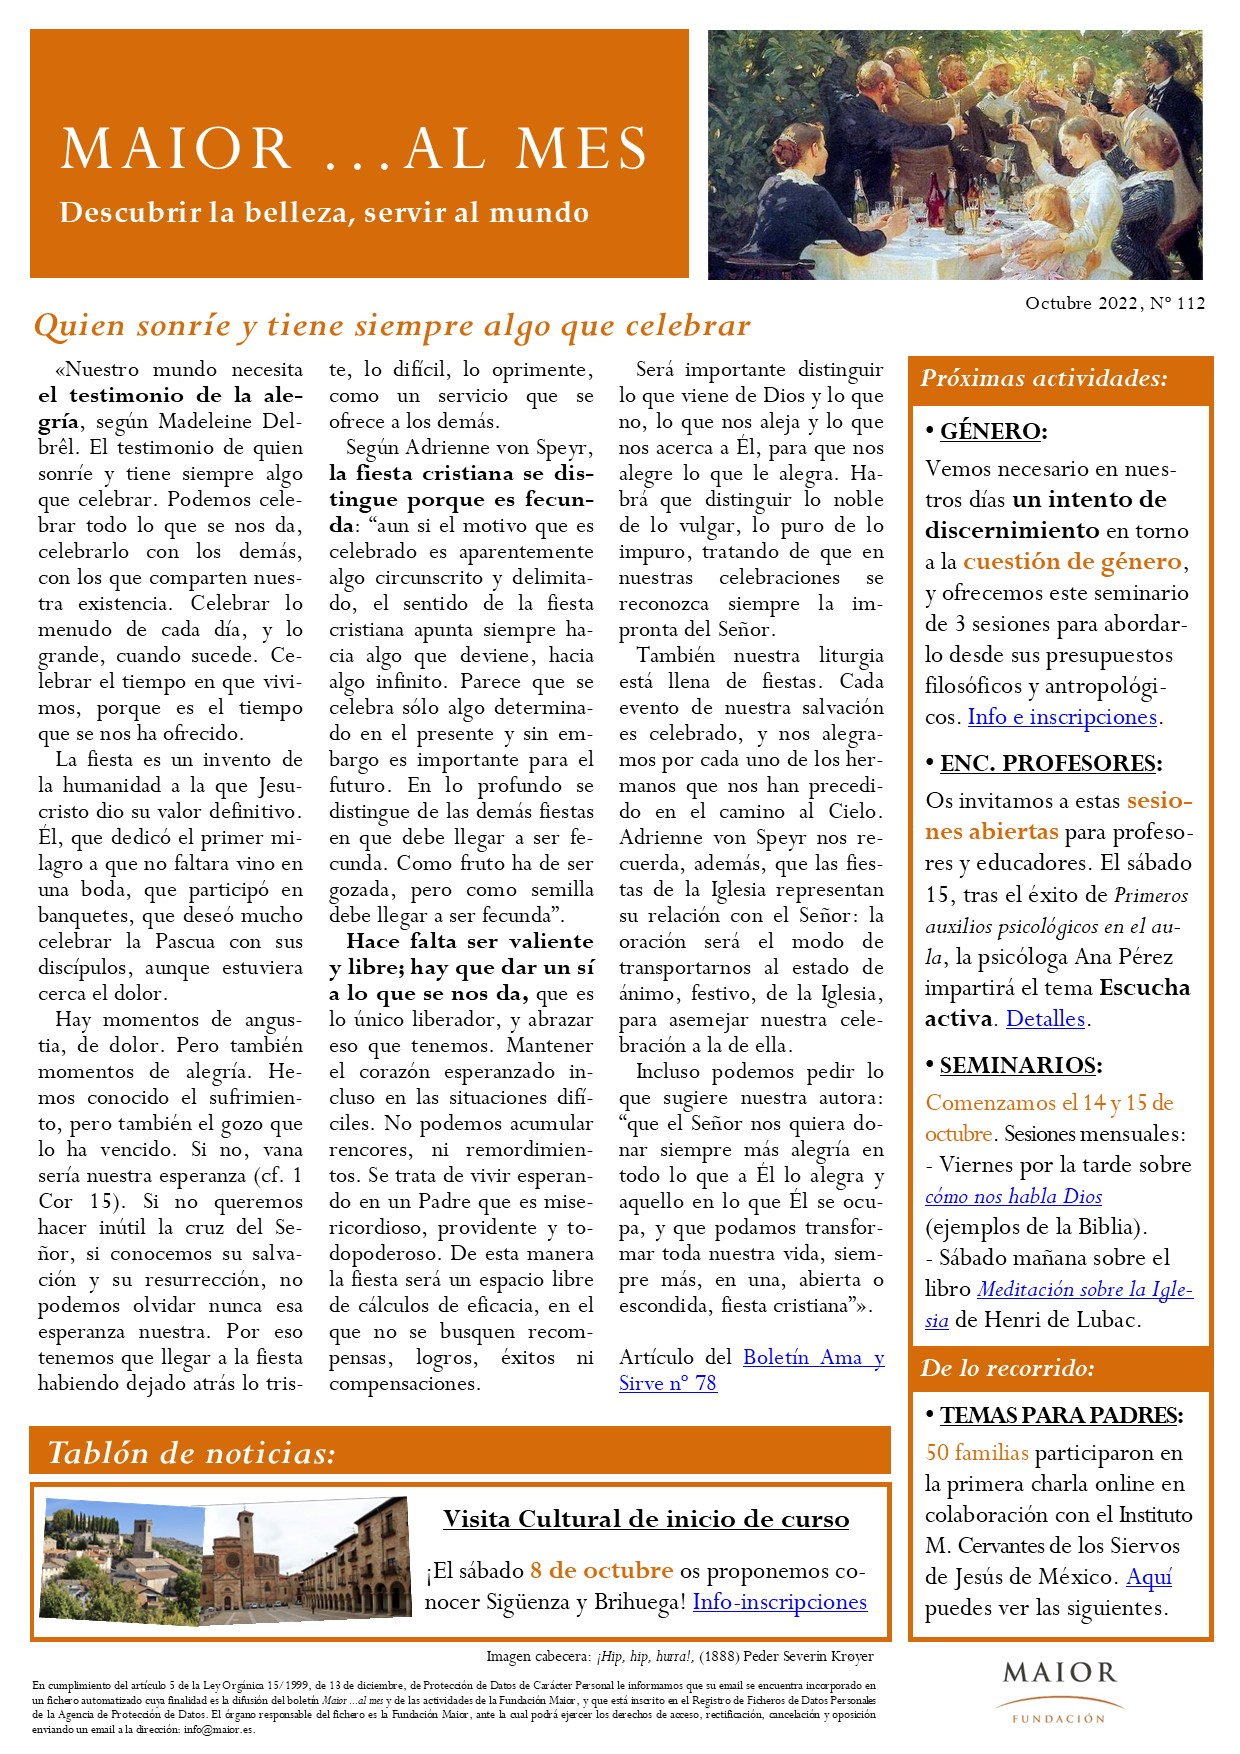 Boletín mensual de noticias y actividades de la Fundación Maior. Edición de octubre 2022